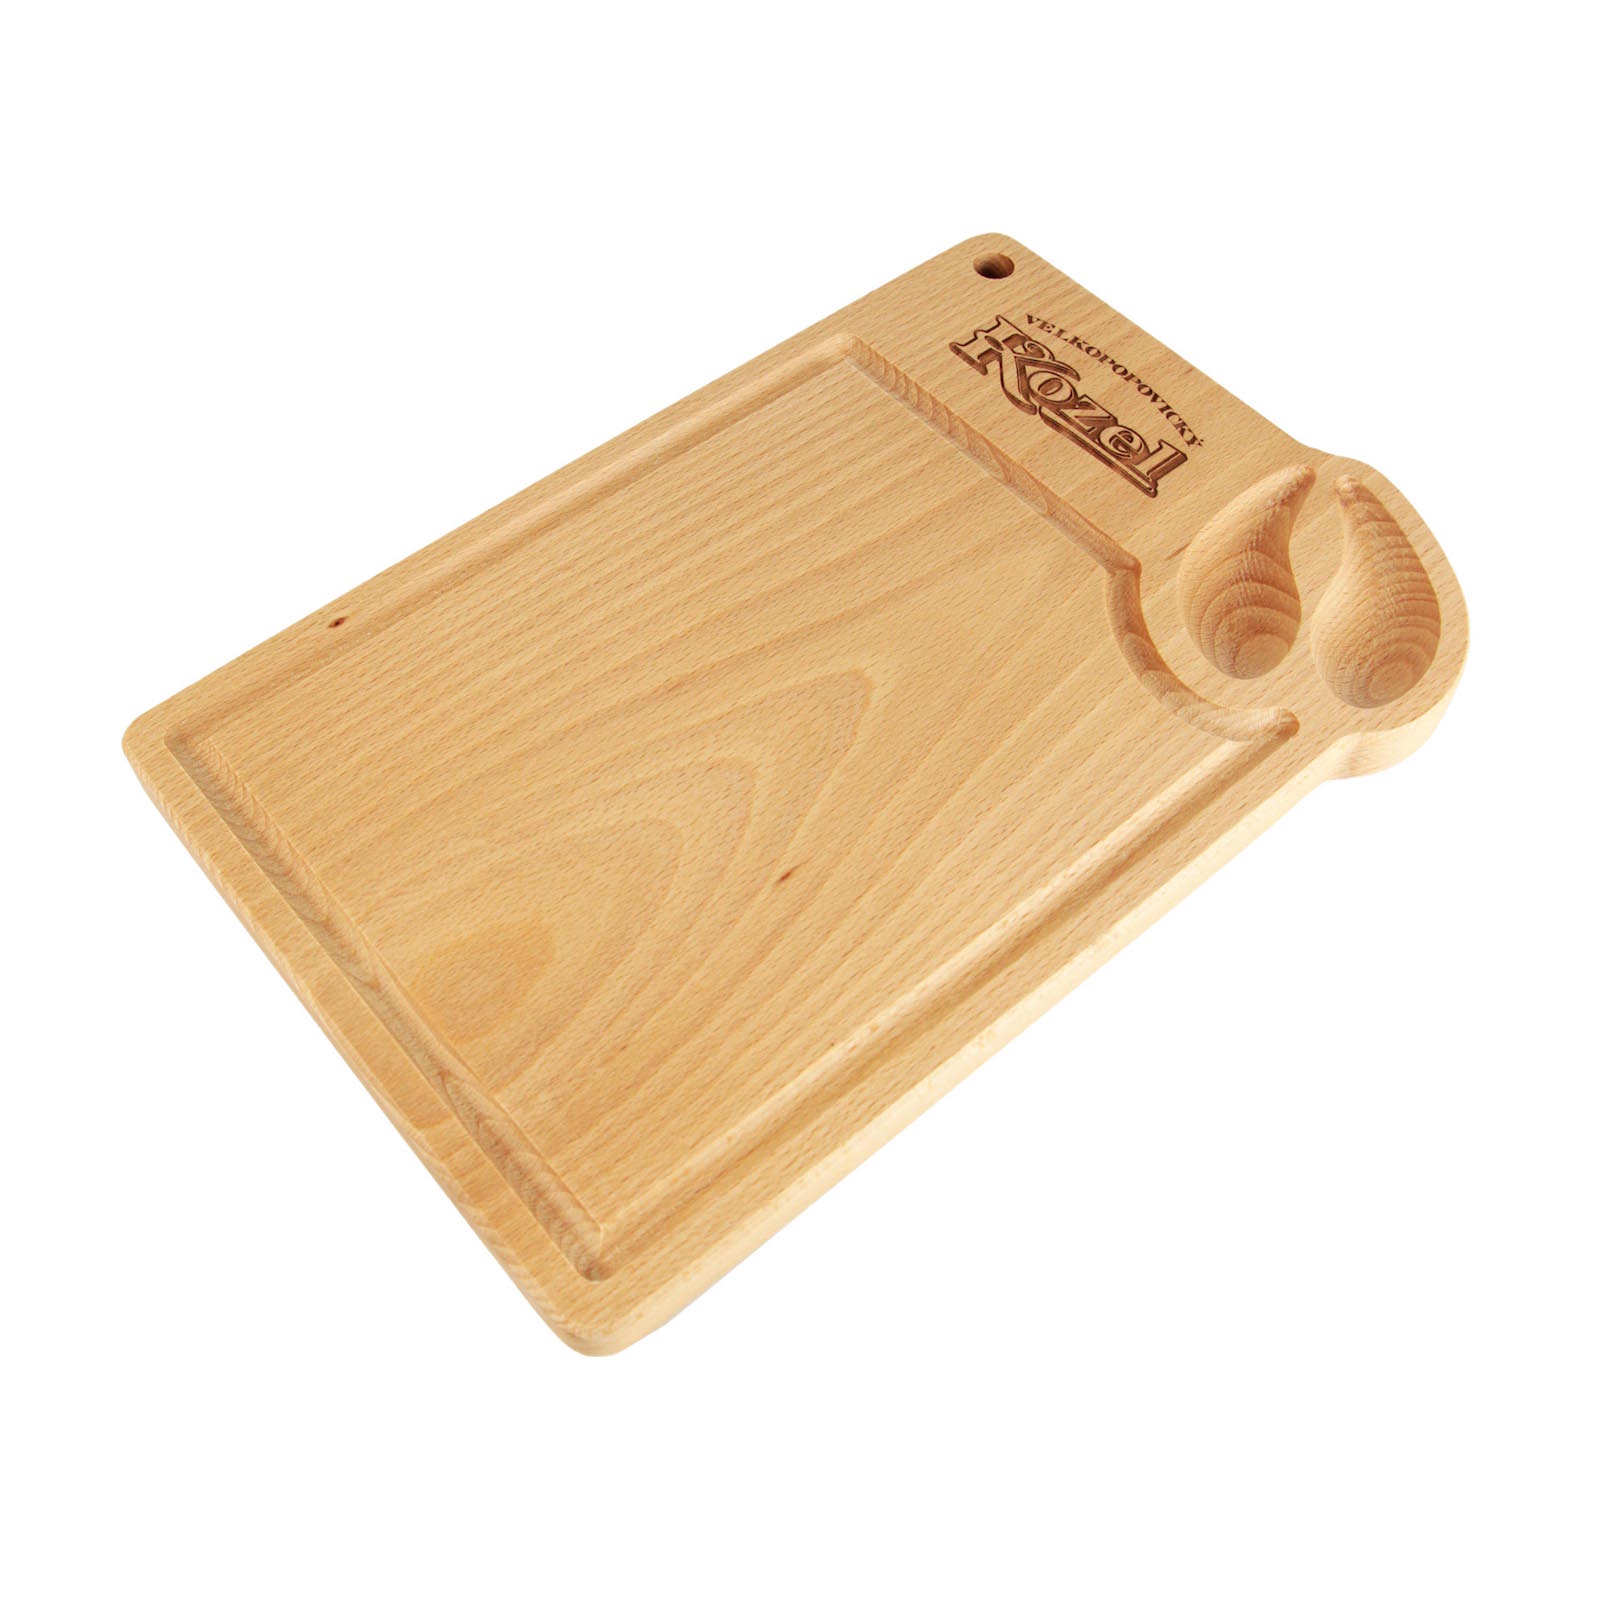 Kozel wooden cutting board - hoofprint